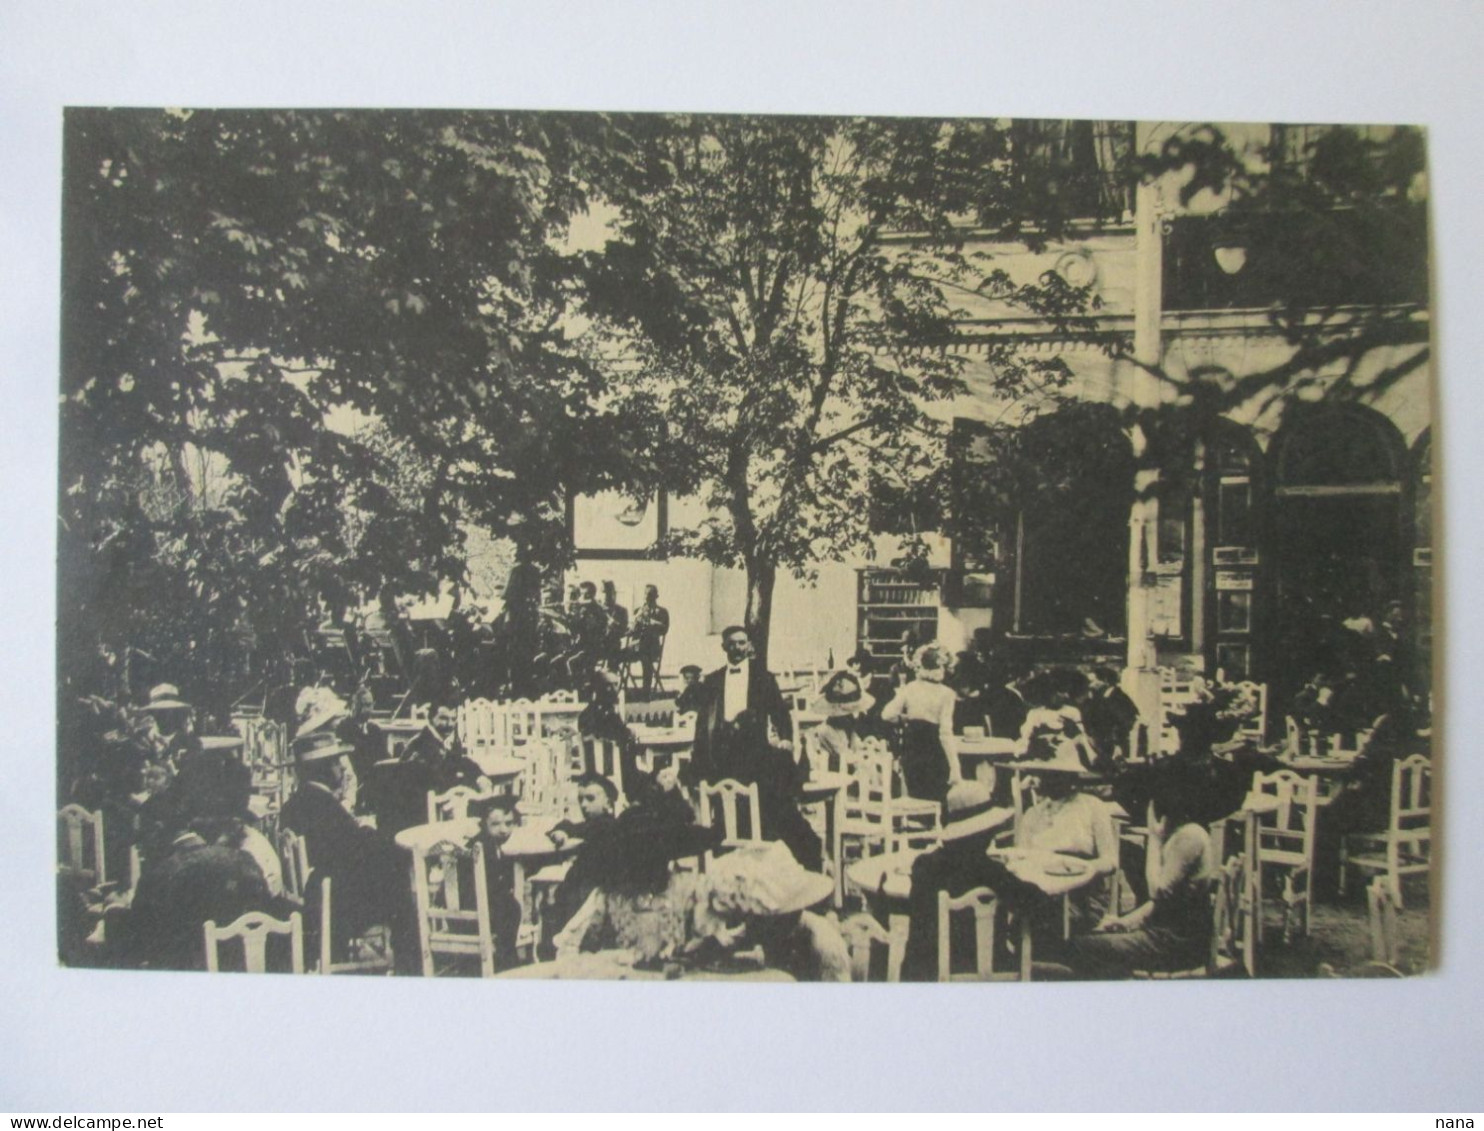 Romania-Sibiu:La Confiserie Dans Le Parc C.p.vers 1920/Confectionery In The Park Unused Postcard 1920s - Roemenië